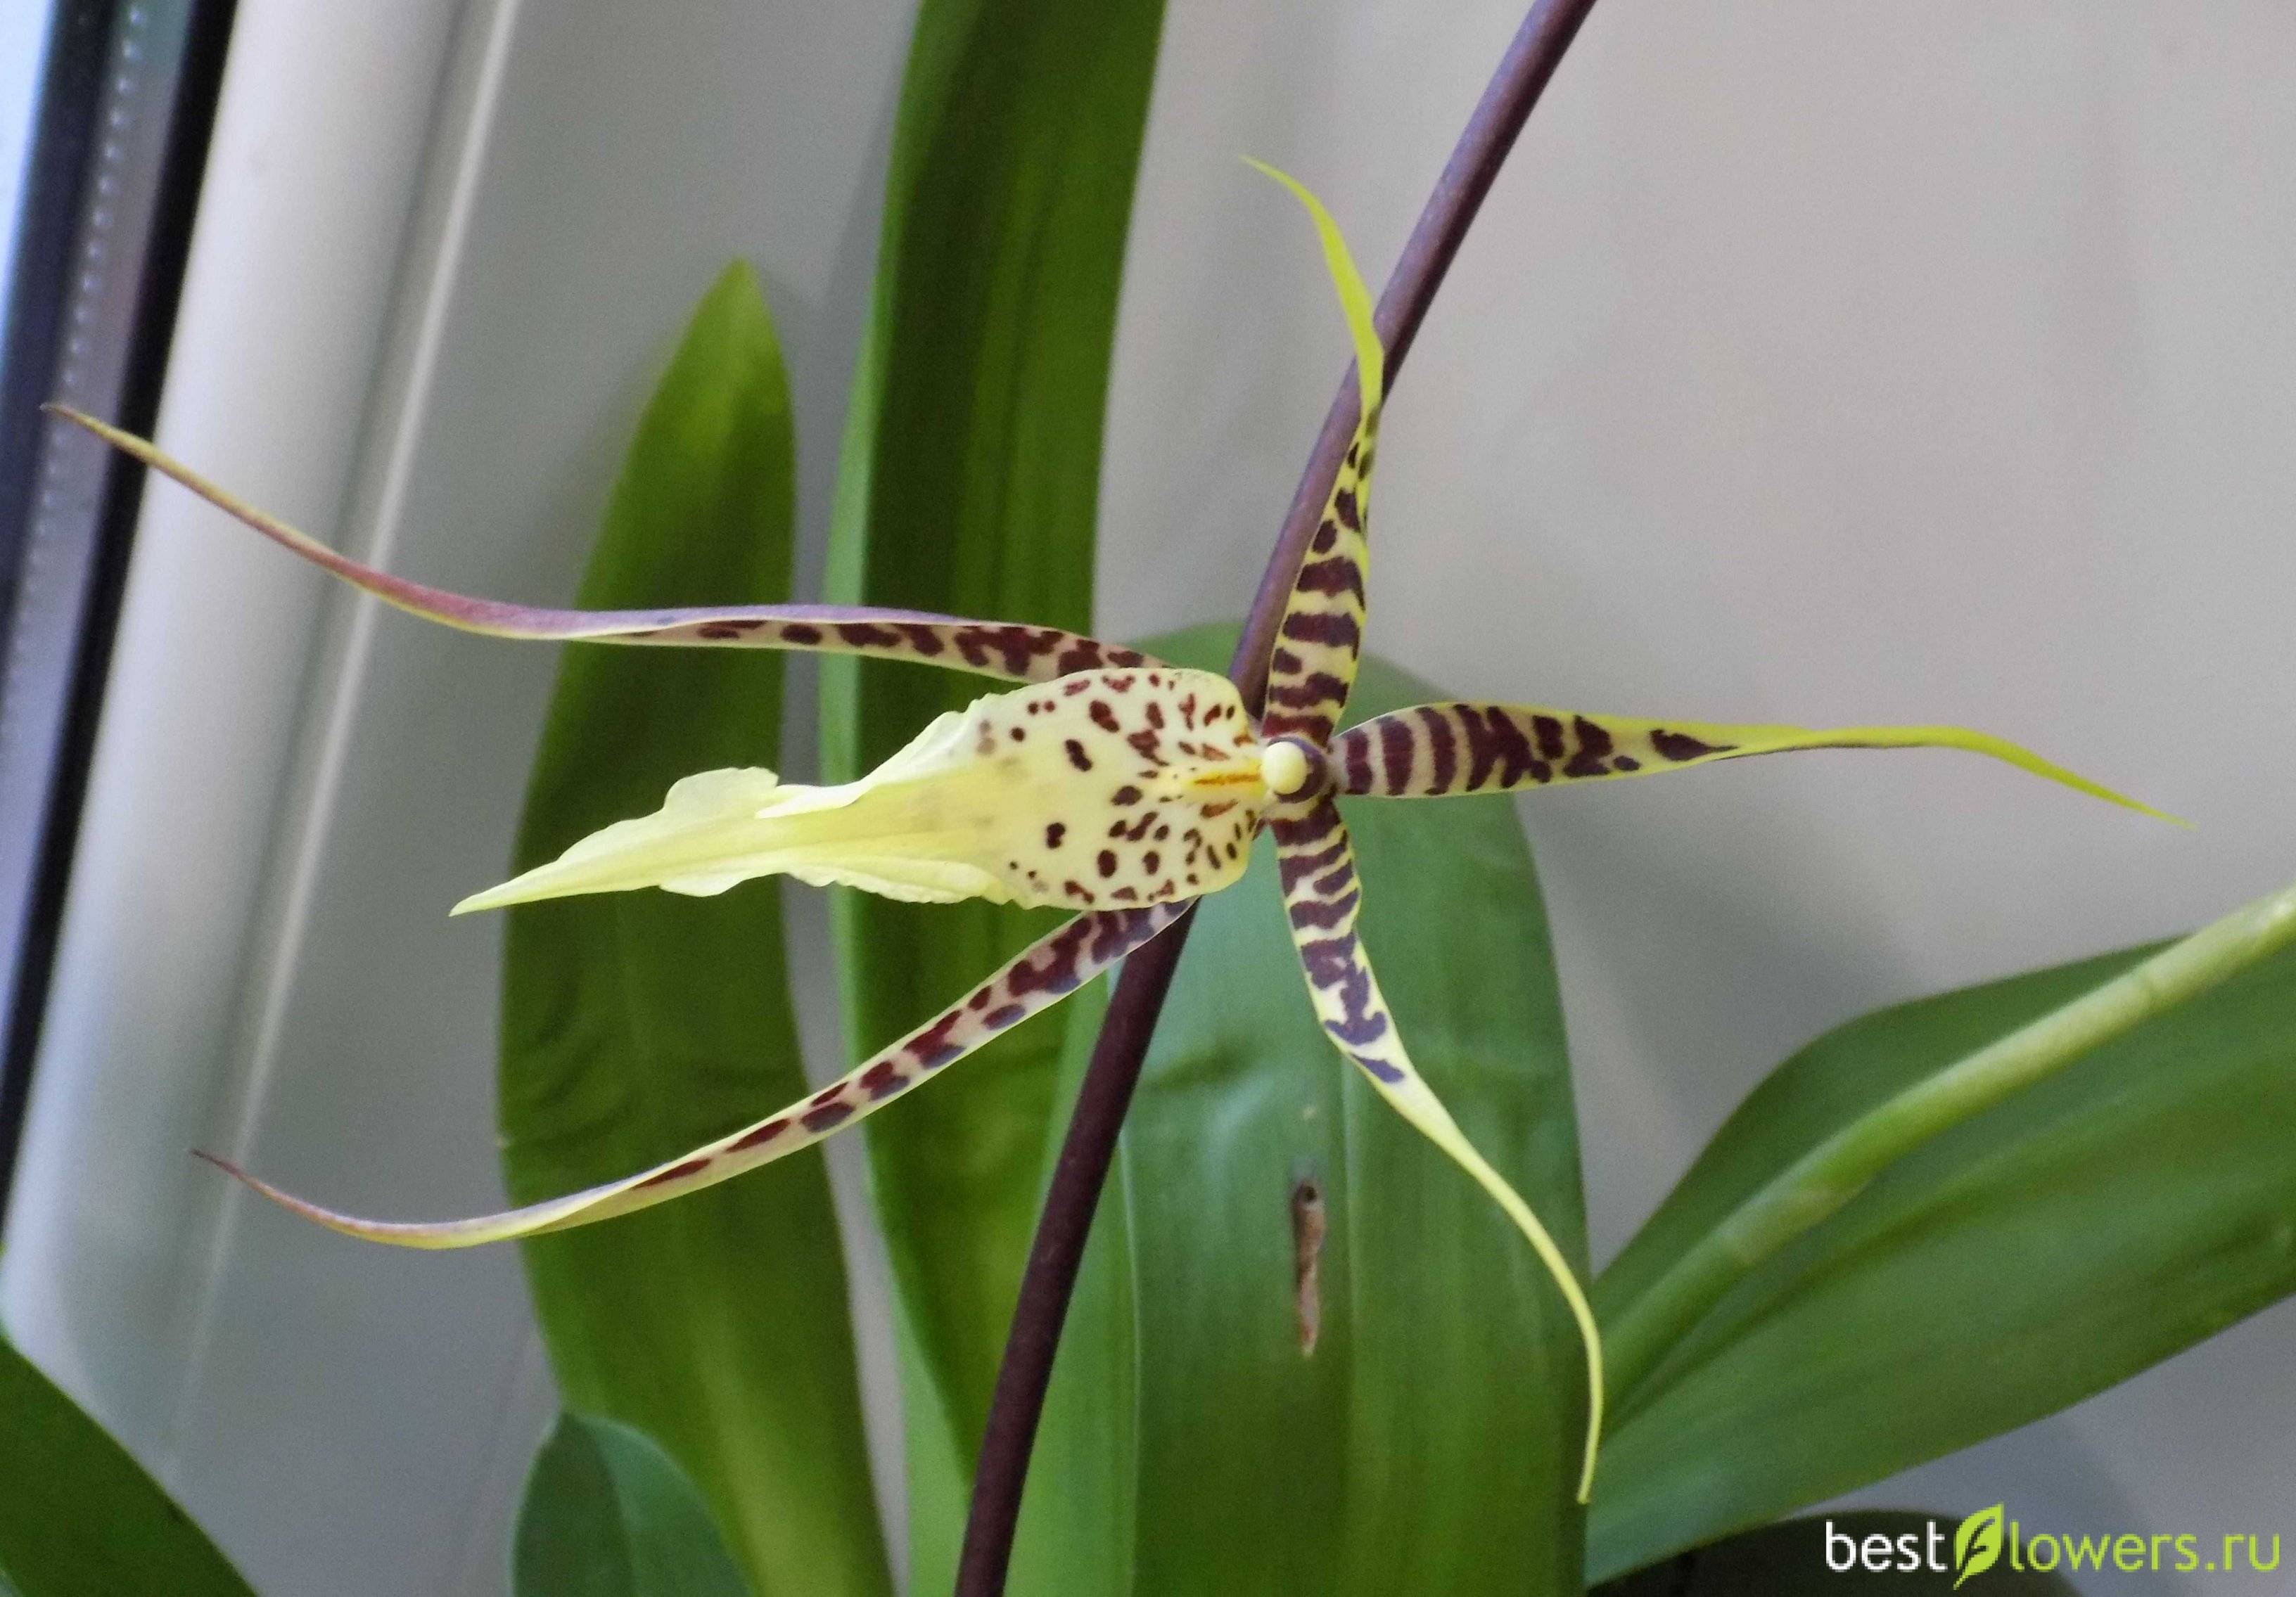 Орхидея брассия: особенности и внешний вид цветка с фото, почему растение называют "орхидея паук", основные правила посадки и ухода в домашних условиях